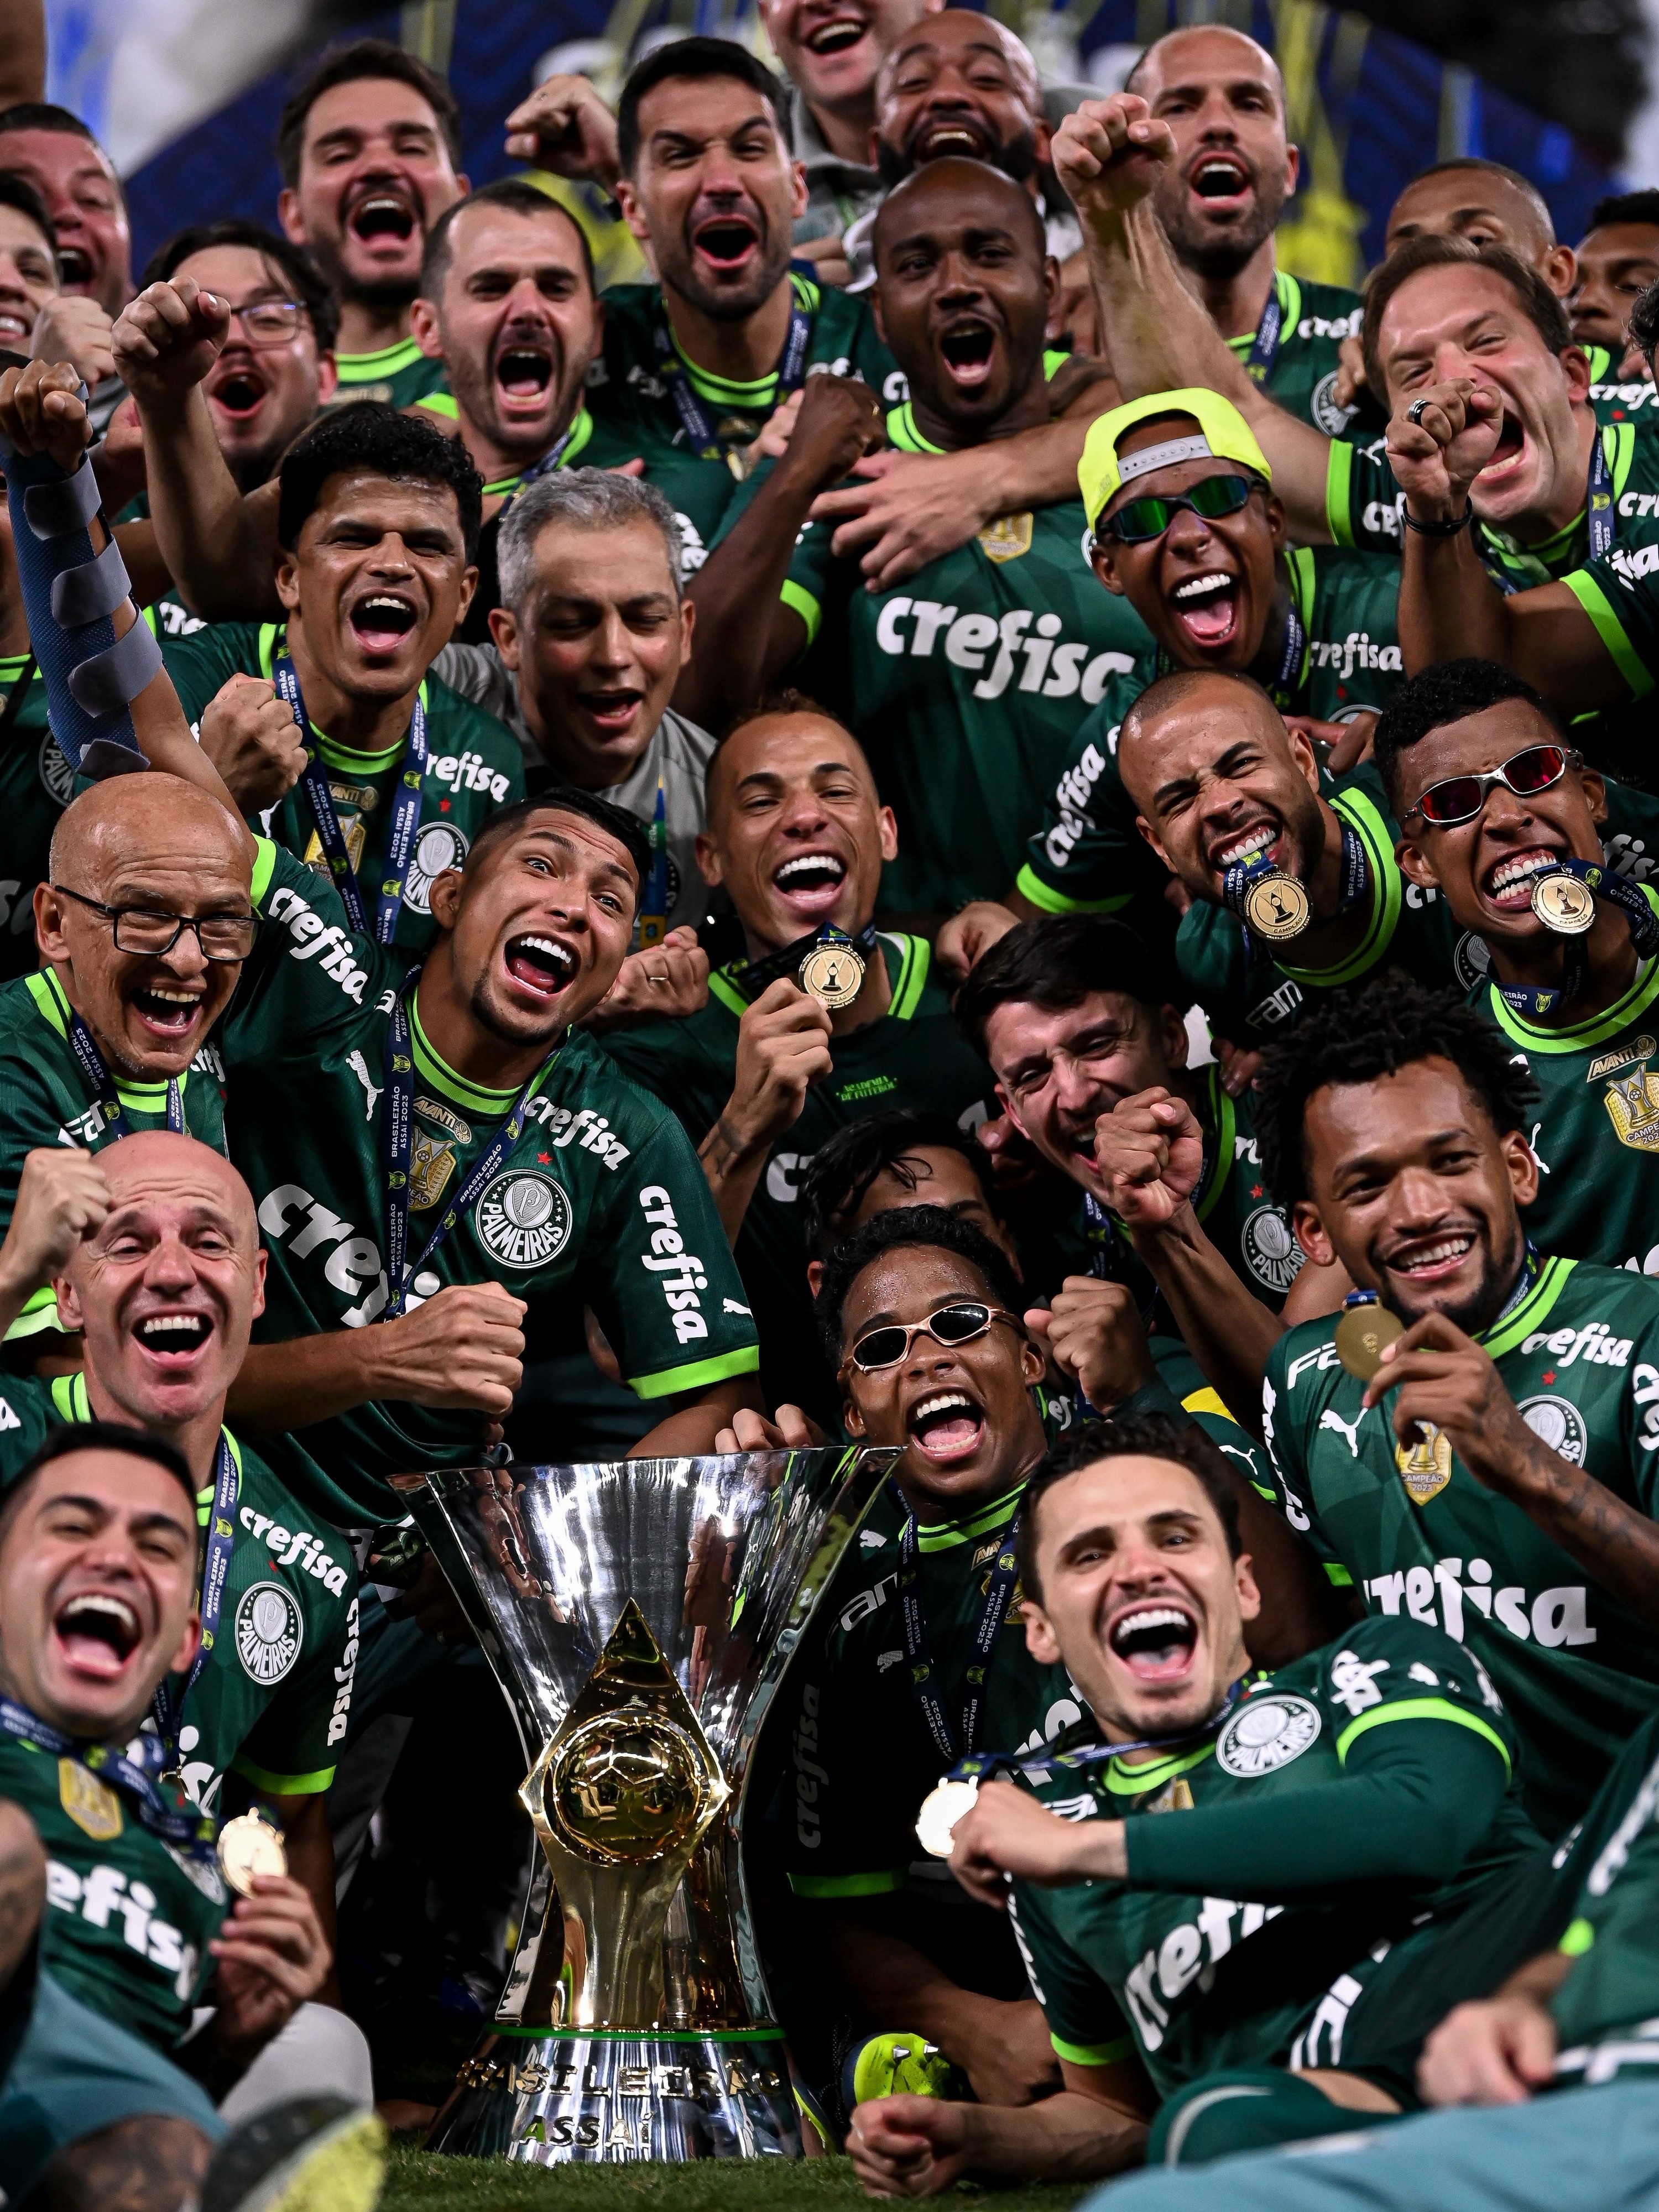 Brasileirão 2023: o que esperar do campeonato?